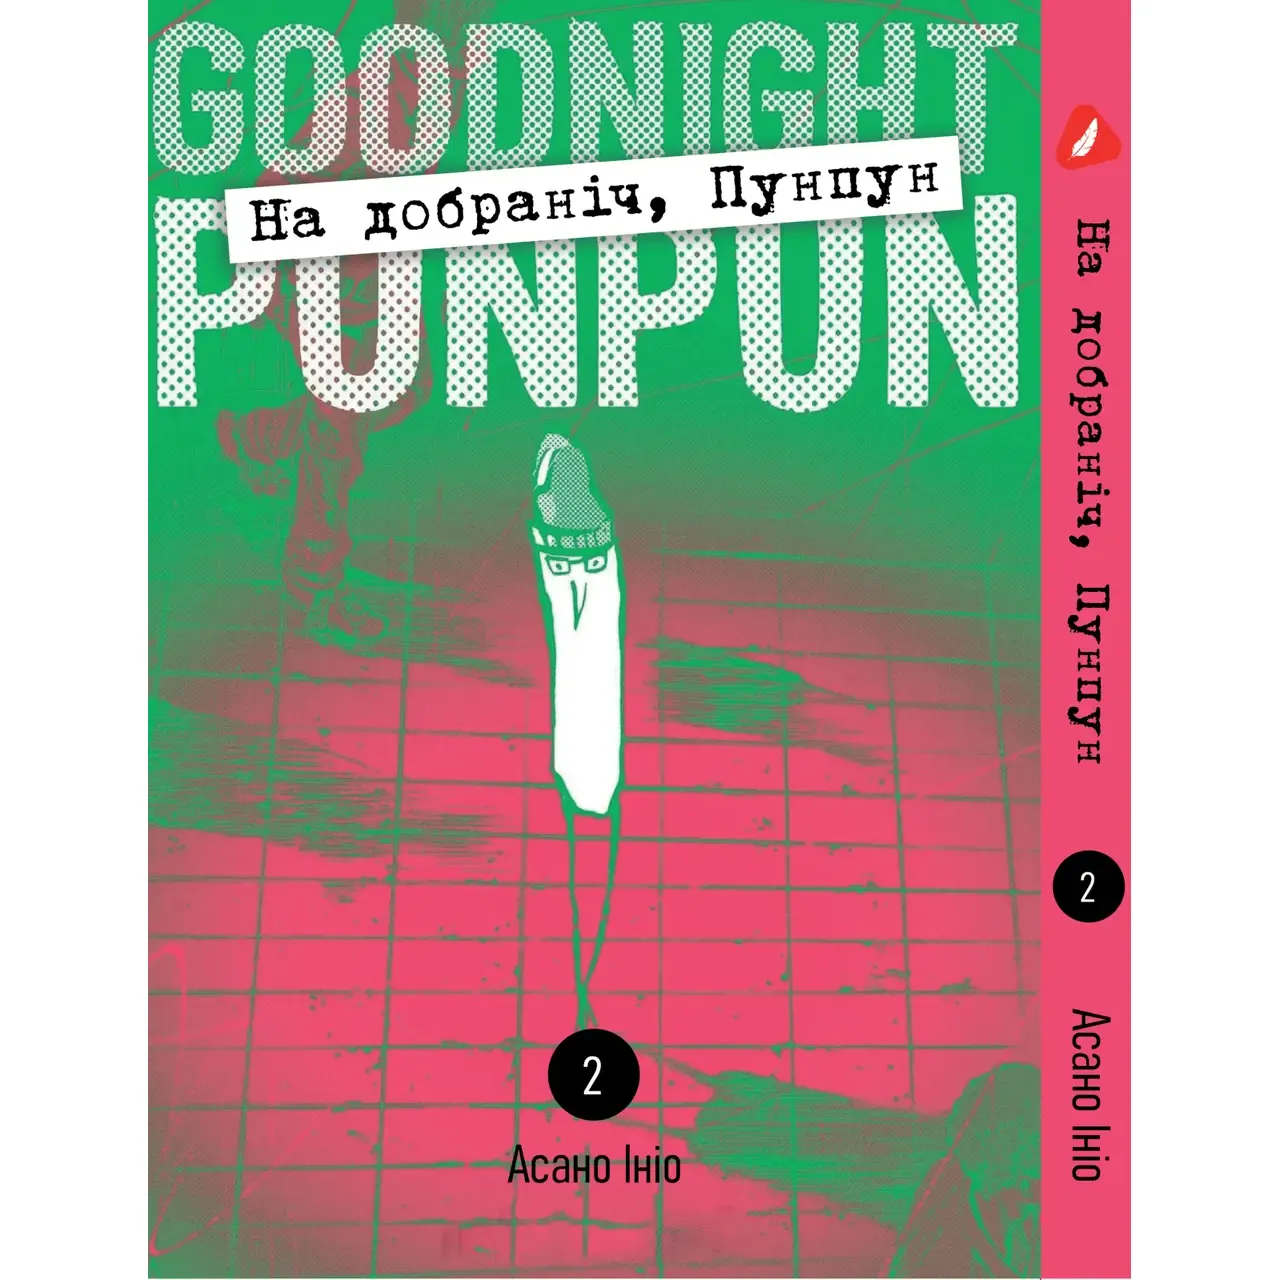 Комплект манґи Yohoho Print Goodnight Punpun На добраніч Пунпун Том з 1 - 5 YP GP K 01 - Асано Ініо (1832373405.0) - фото 3